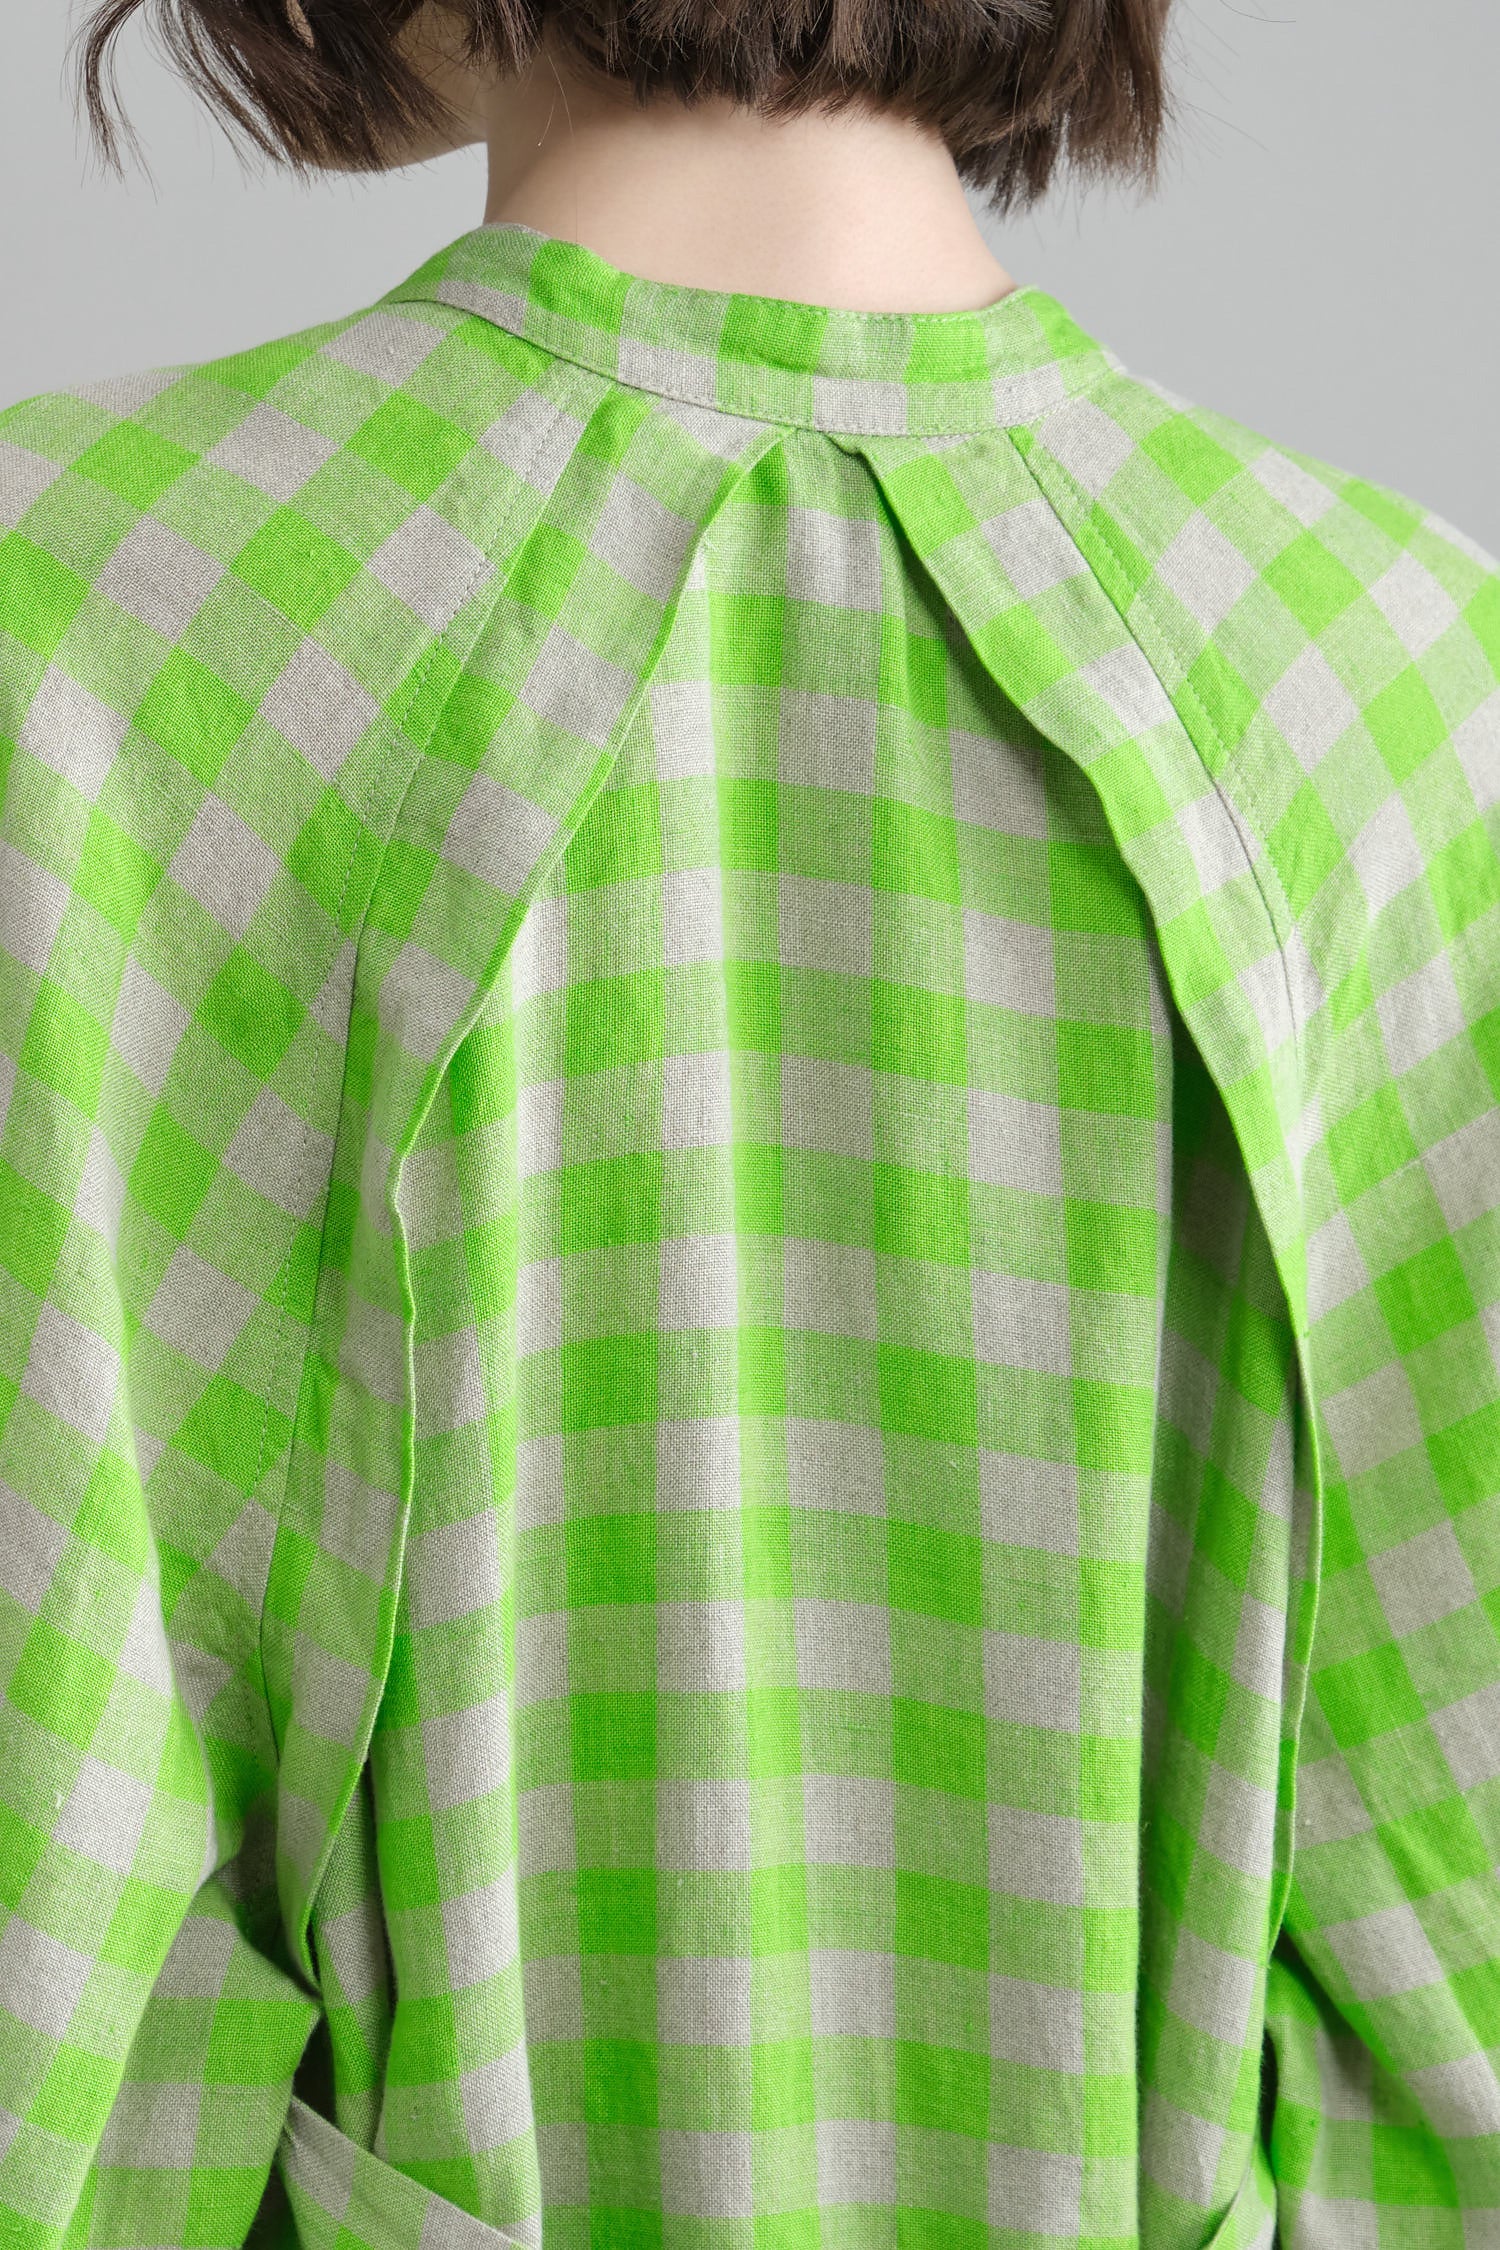 Back detailing on Leaf Dress in Spring Green Checks